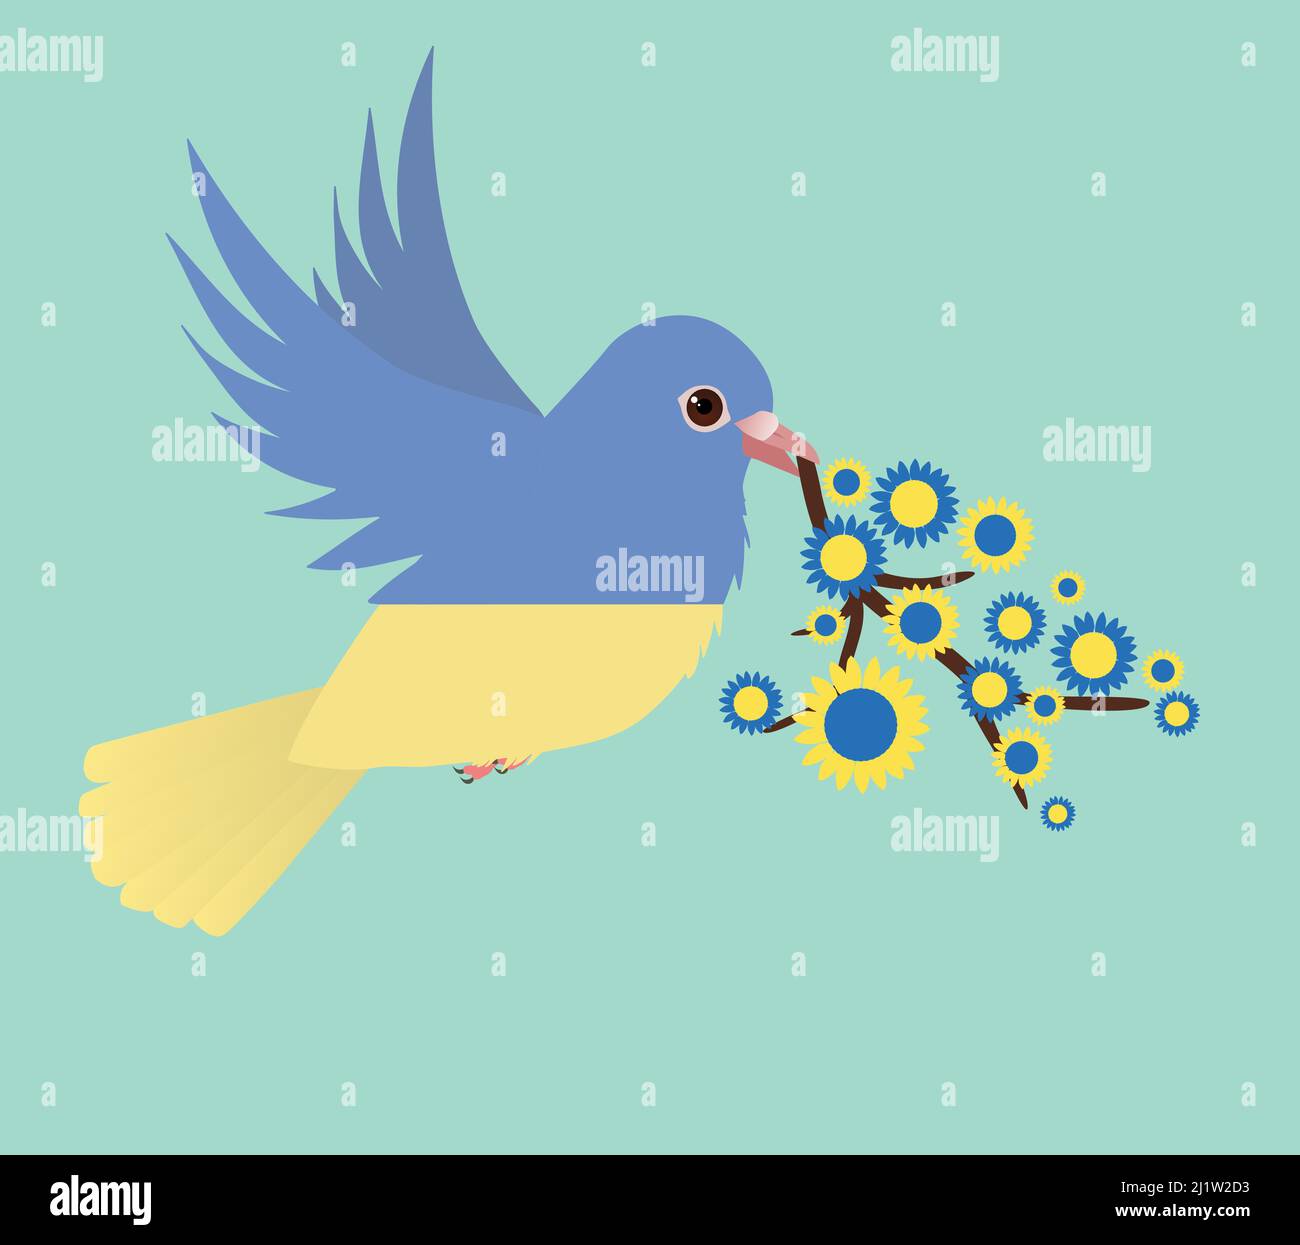 Una colomba di pace nella bandiera Ucraina colori. L'uccello sta tenendo un ramo con girasoli blu e gialli lo sfondo è una tonalità verde. Illustrazione Vettoriale